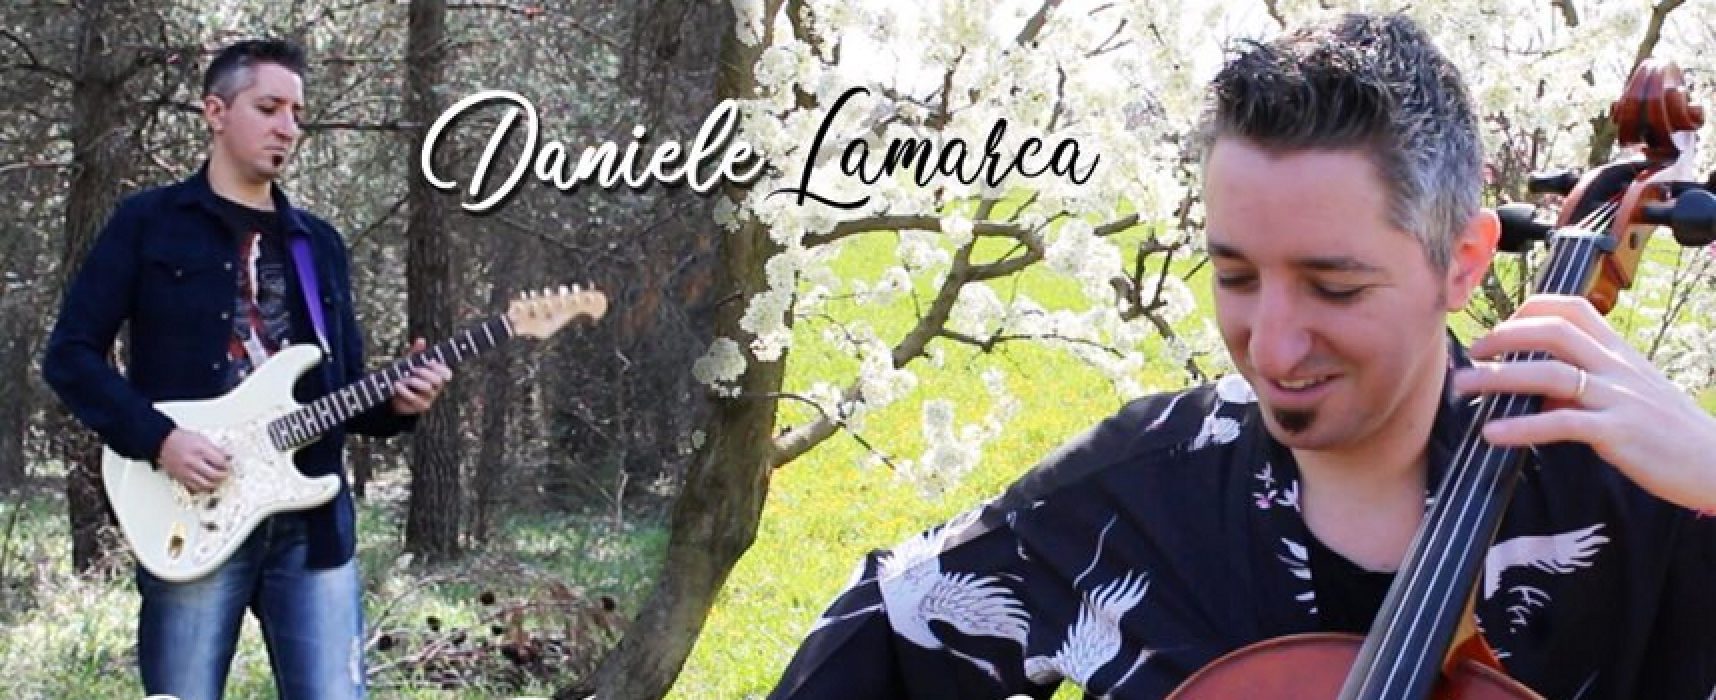 Il musicista Daniele Lamarca lancia il suo progetto musicale tra le bellezze biscegliesi